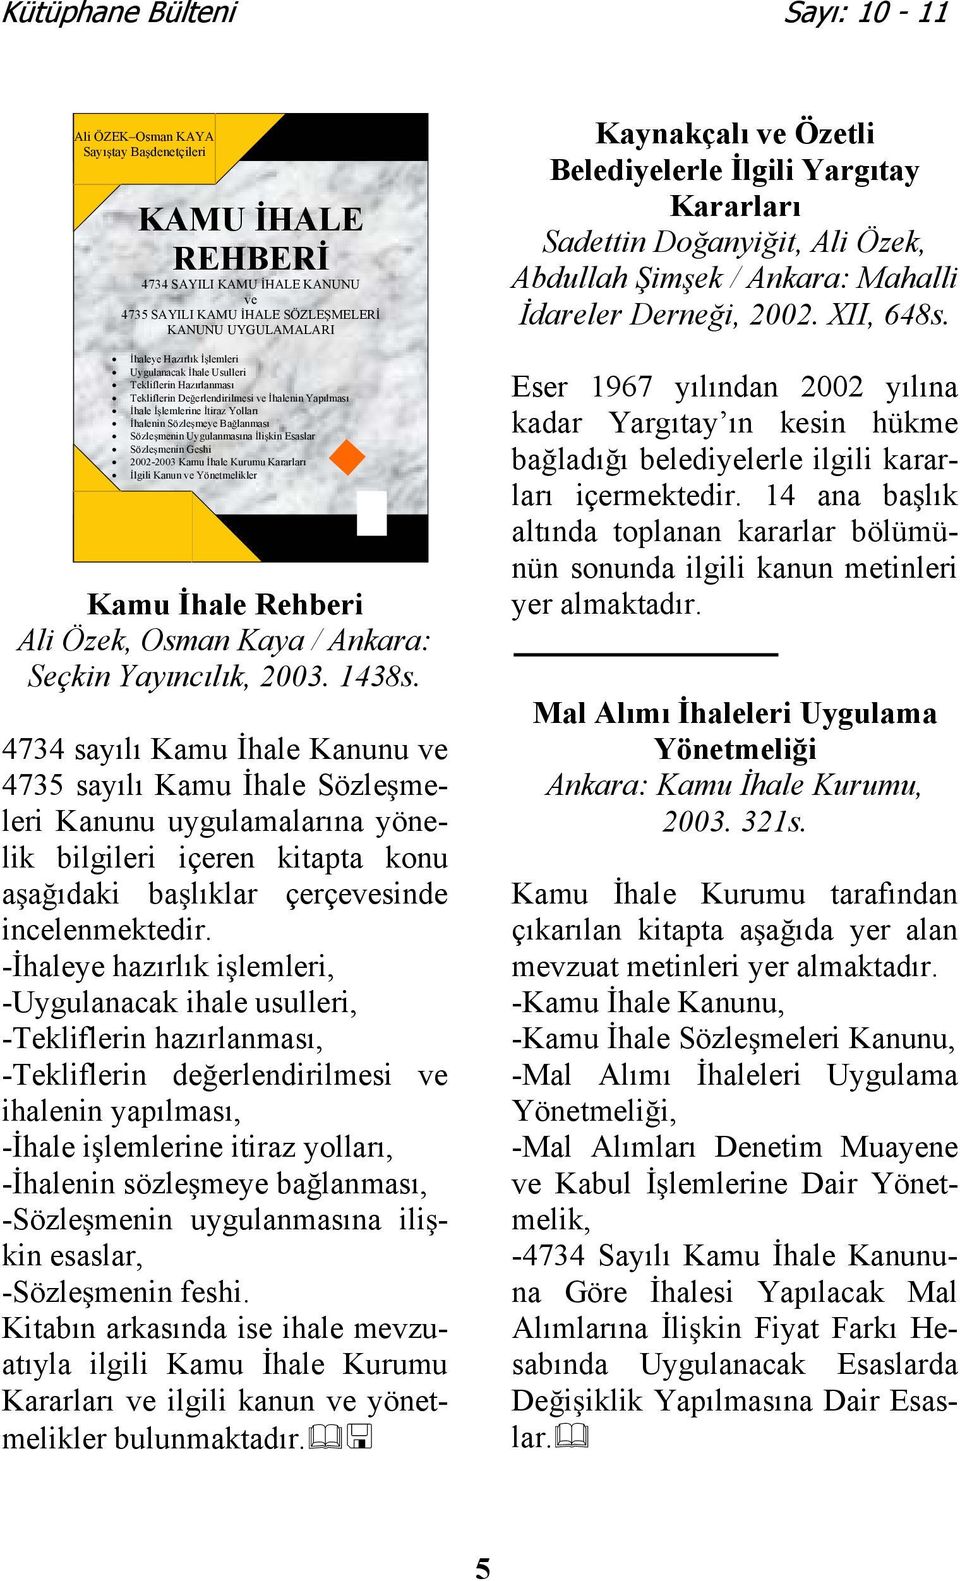 Kamu hale Kurumu Kararları lgili Kanun ve Yönetmelikler Kamu hale Rehberi Ali Özek, Osman Kaya / Ankara: Seçkin Yayıncılık, 2003. 1438s.